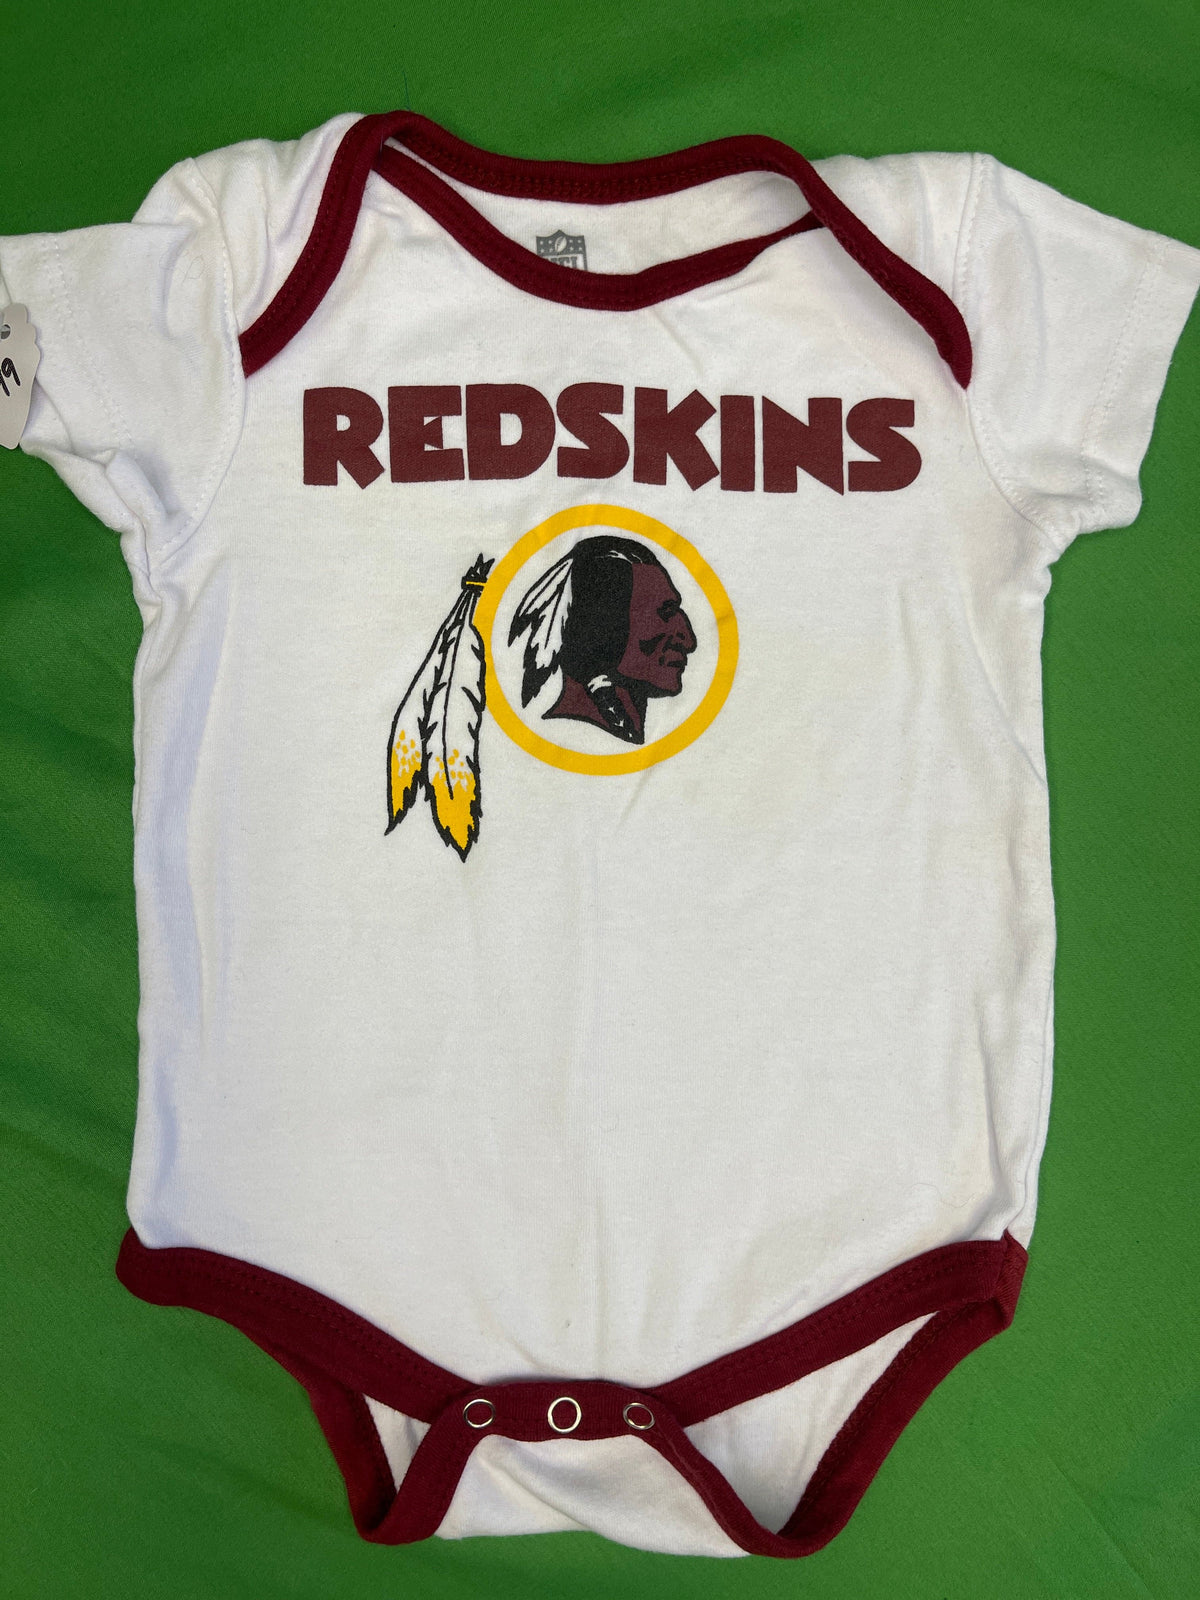 NFL Washington Commanders (Redskins) Bodysuit Infant 12 Months